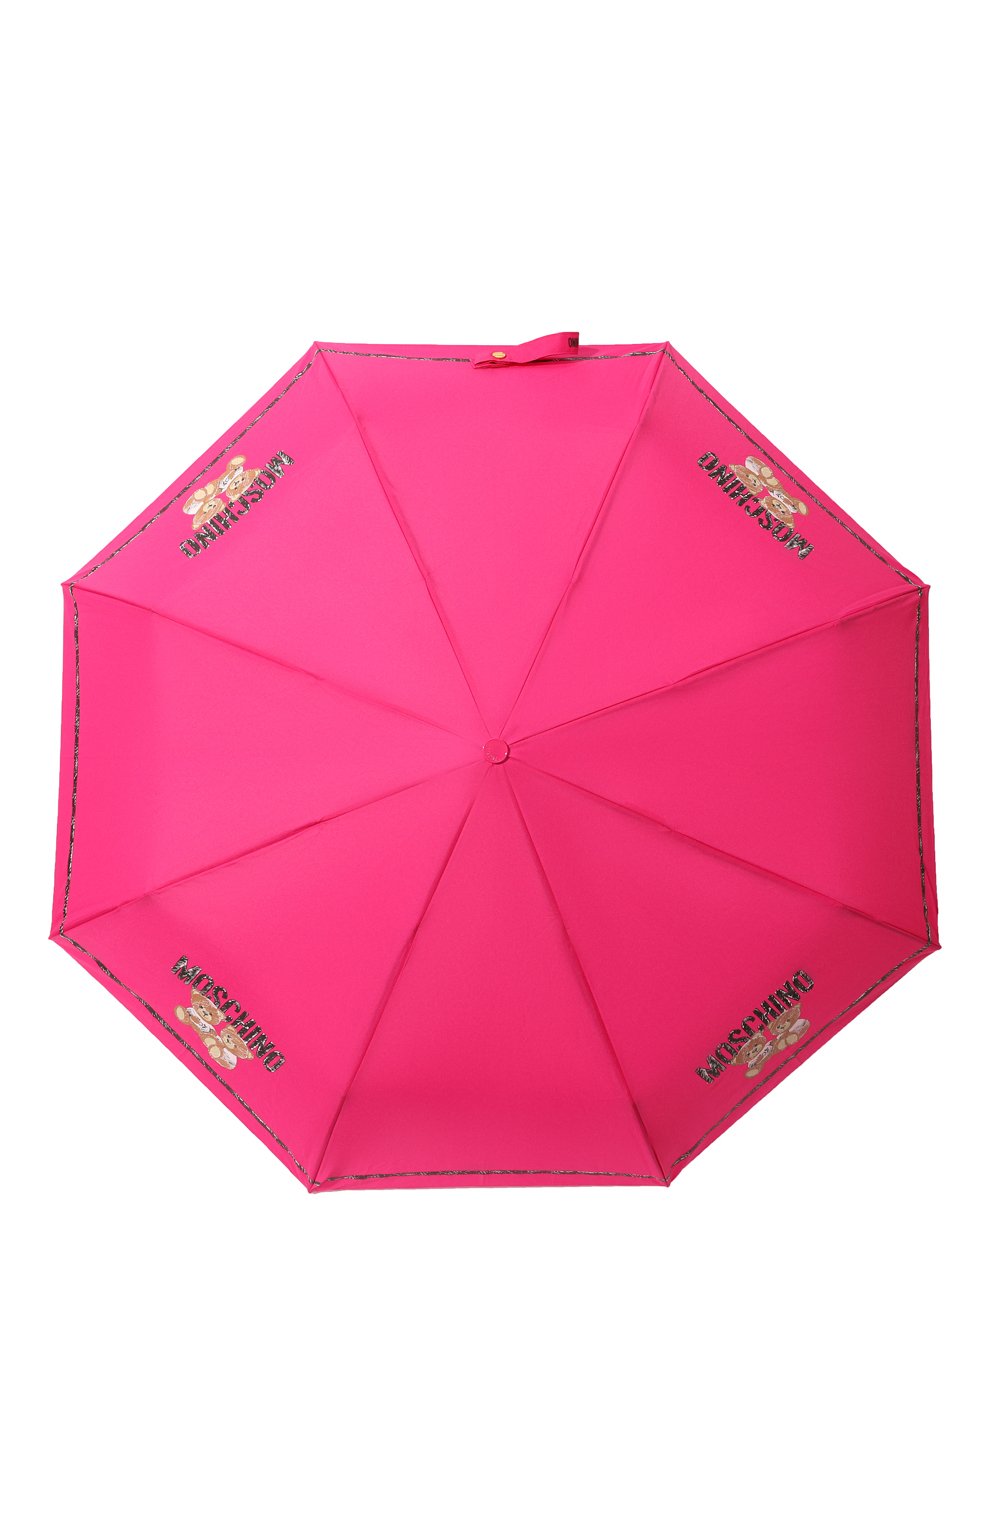 Женский складной зонт MOSCHINO фуксия цвета, арт. 8169-0PENCL0SE | Фото 1 (Материал: Текстиль, Синтетический материал, Металл)